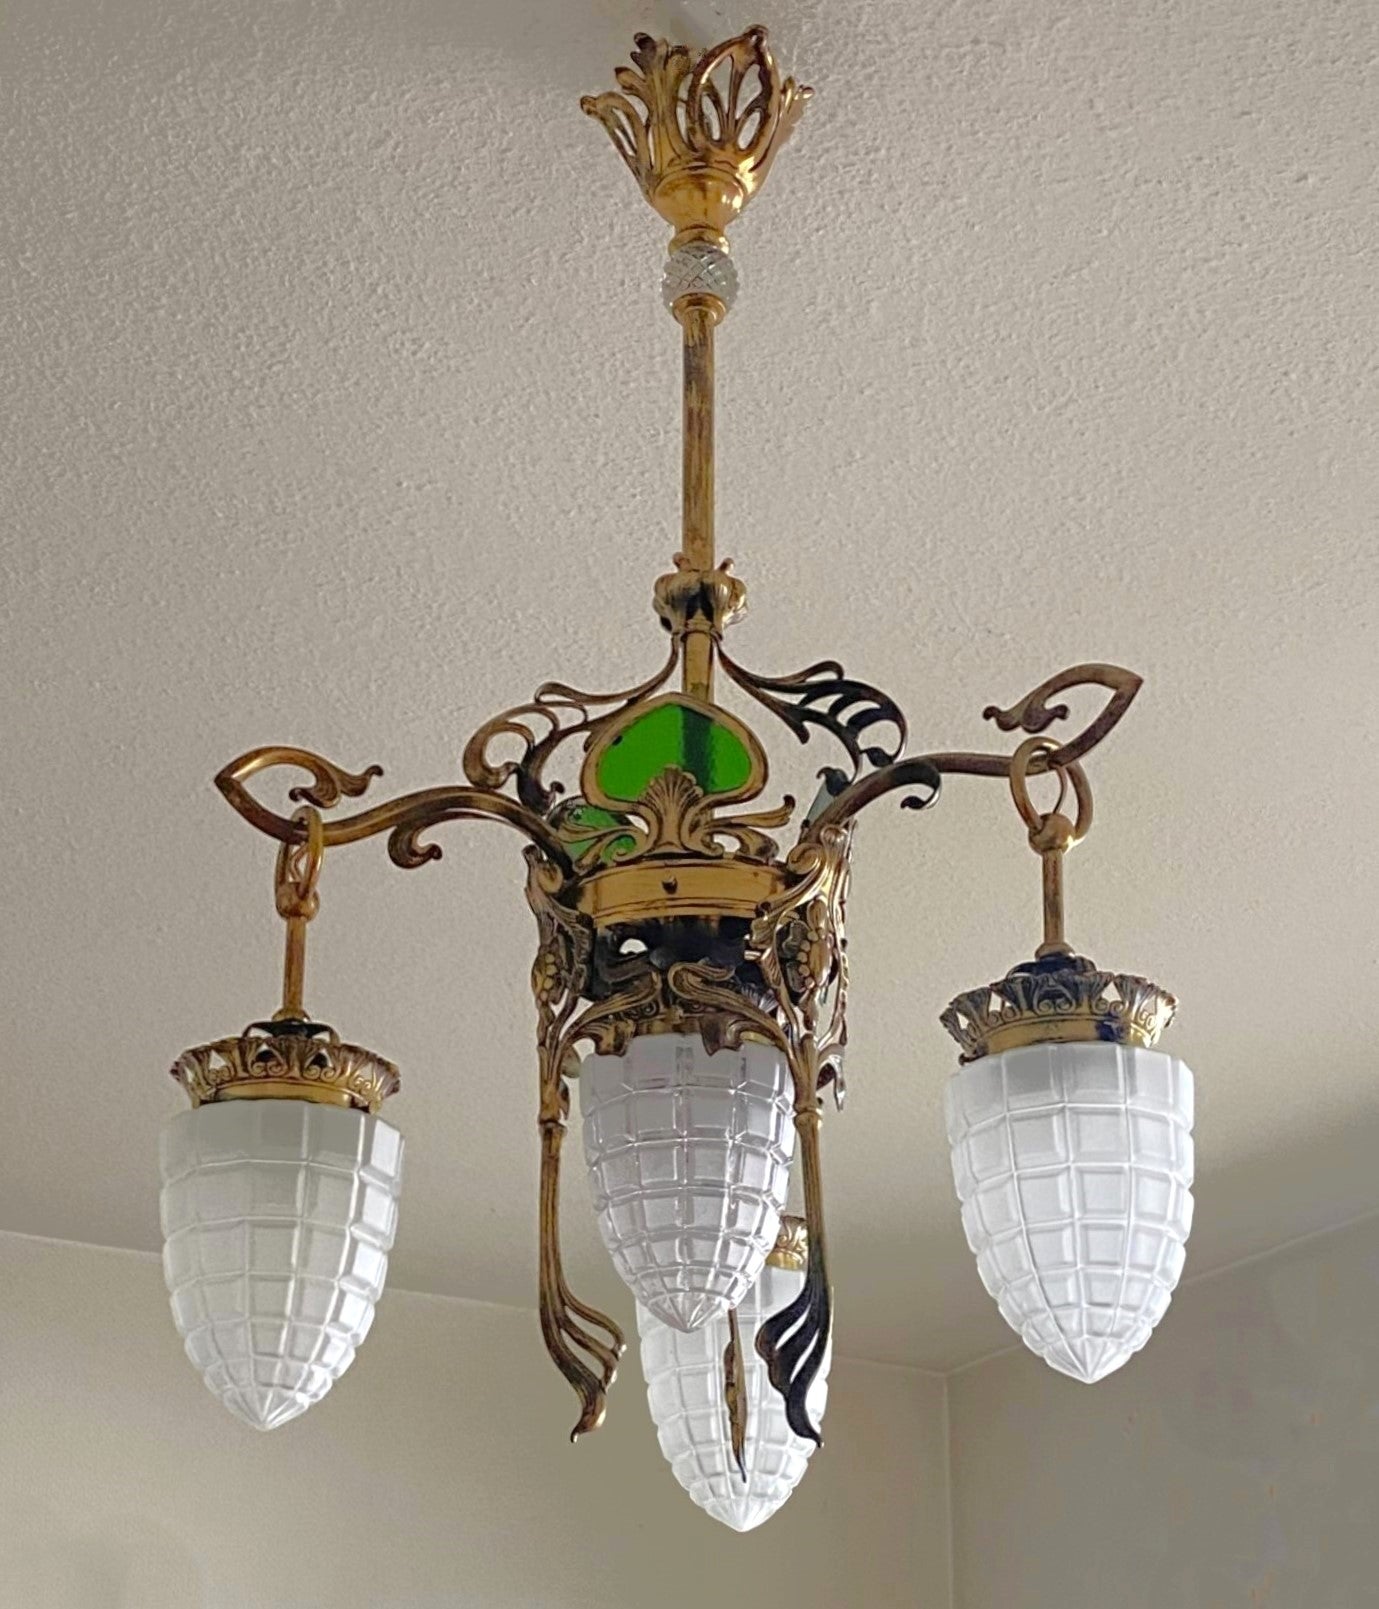 French Art Nouveau Jugendstil Brass Glass Four-Light Chandelier, 1900-1910 For Sale